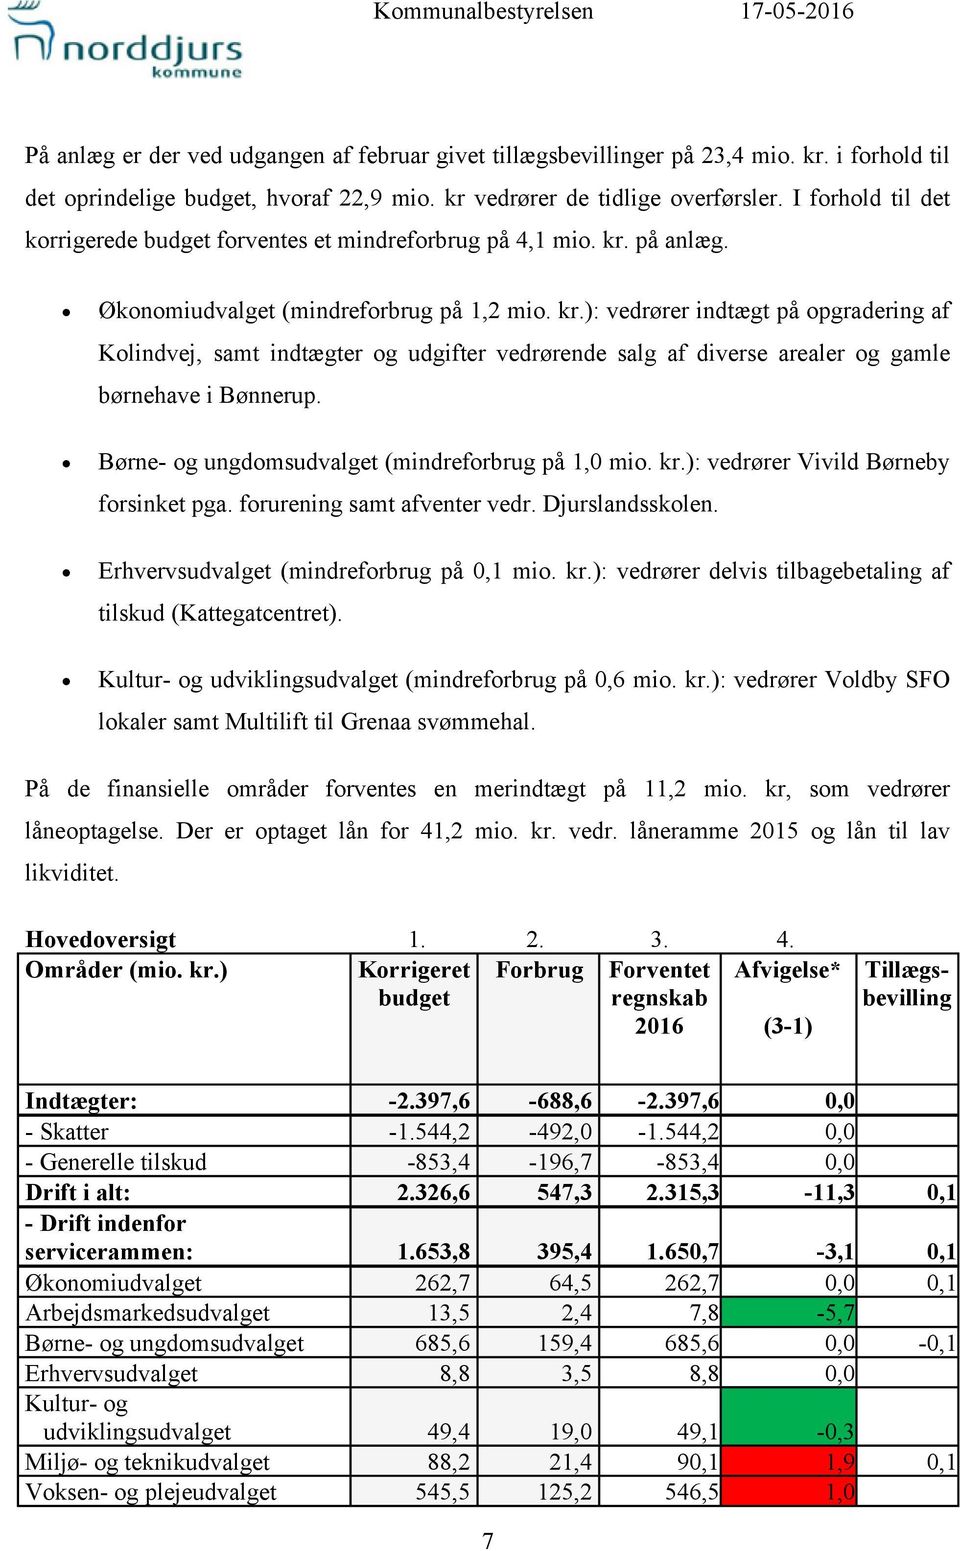 på anlæg. Økonomiudvalget (mindreforbrug på 1,2 mio. kr.): vedrører indtægt på opgradering af Kolindvej, samt indtægter og udgifter vedrørende salg af diverse arealer og gamle børnehave i Bønnerup.